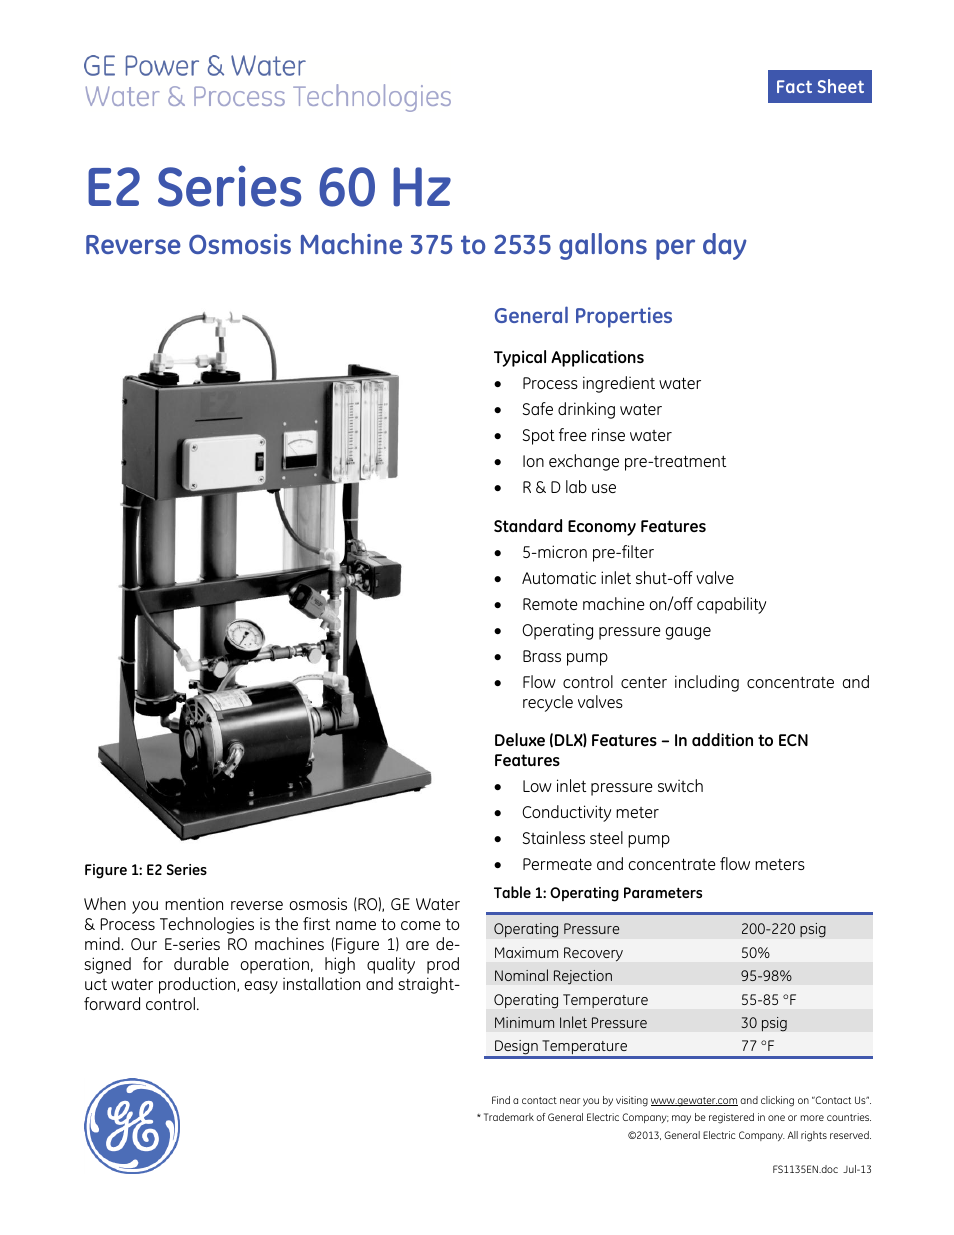 E-Series Reverse Osmosis - E2 60 Hz